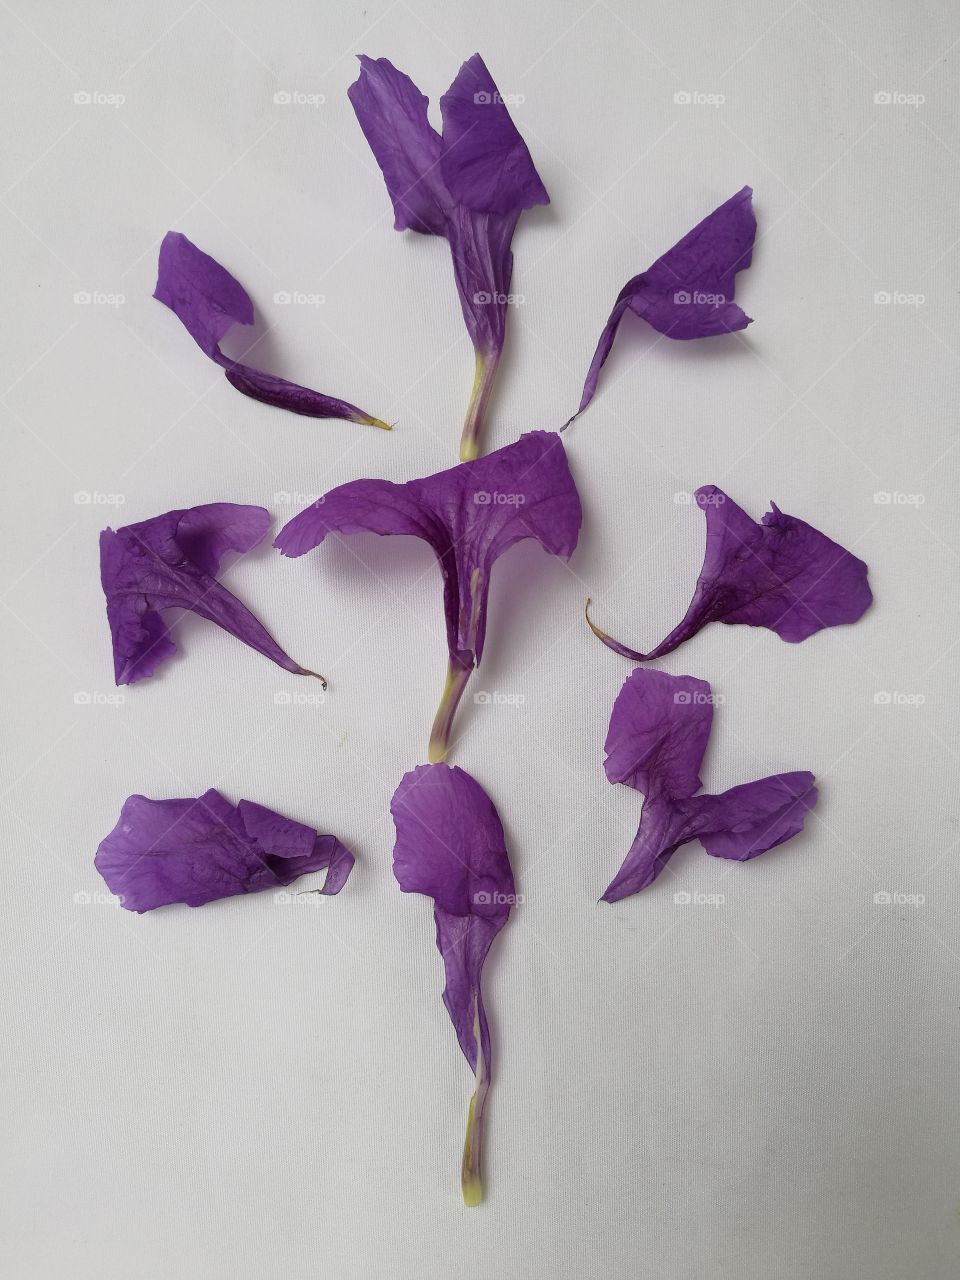 violet petals